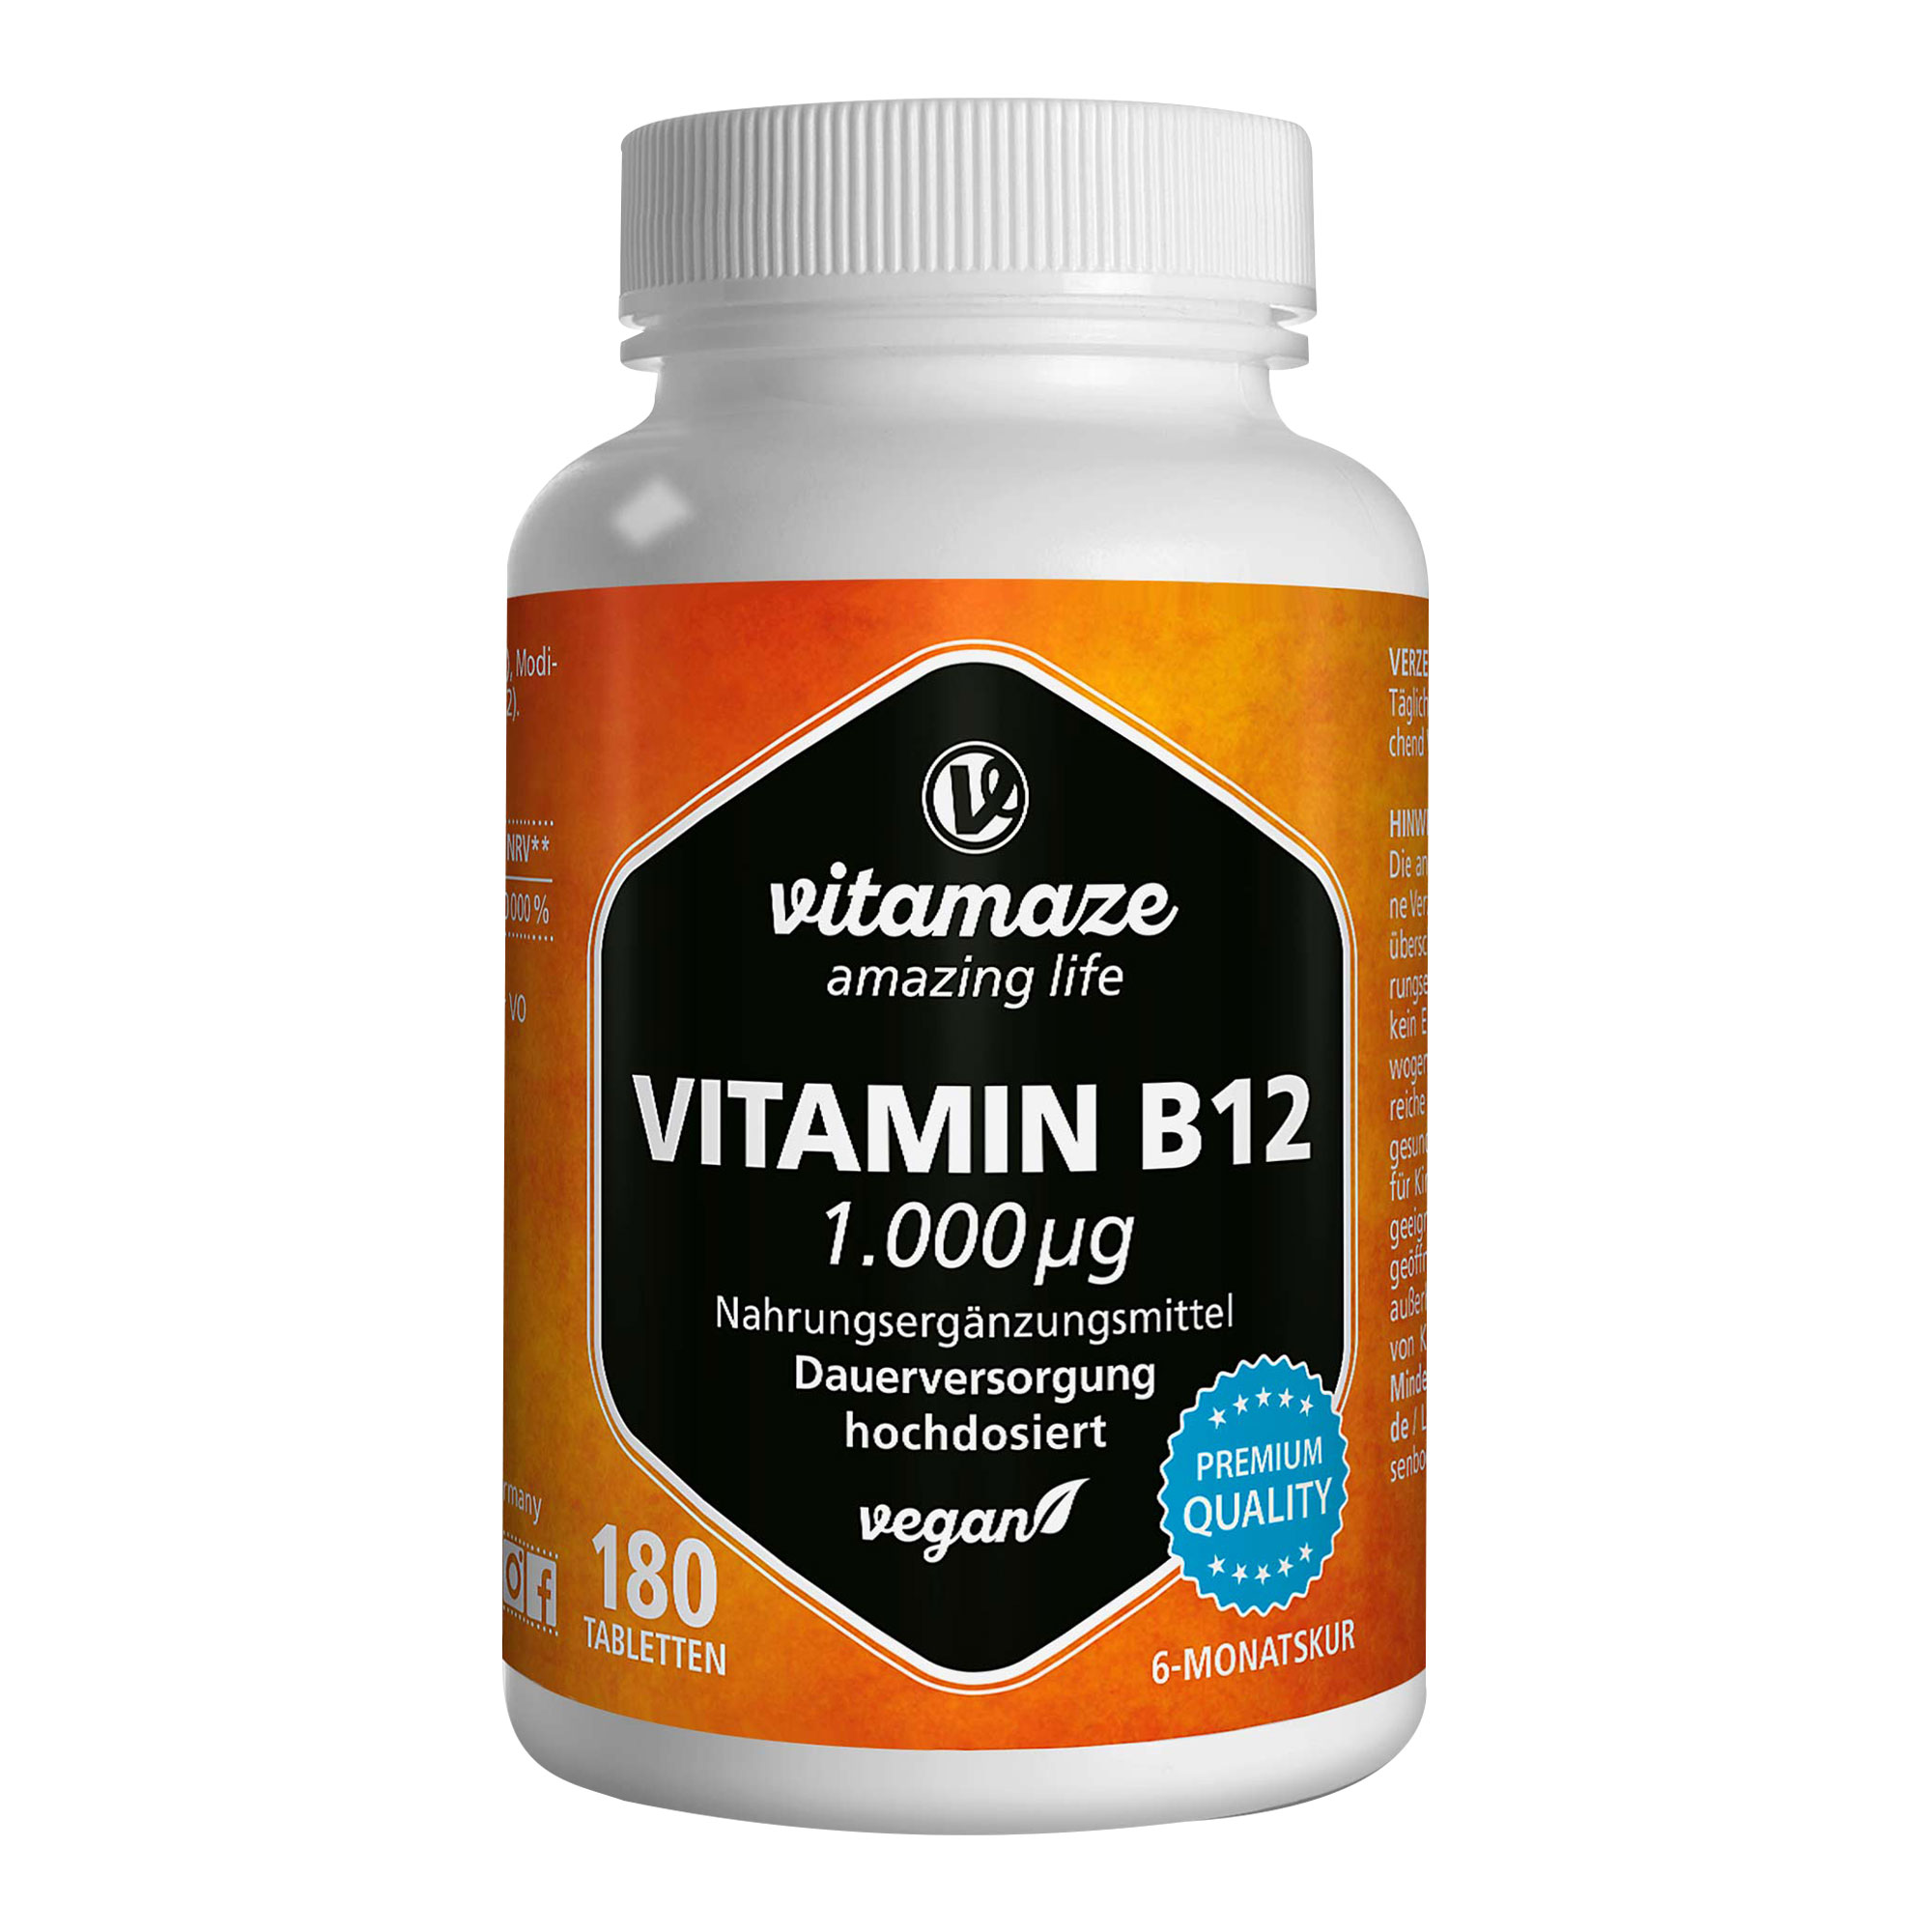 Nahrungsergänzungsmittel mit Vitamin B12 fürs Wohlbefinden und zur Verringerung von Müdigkeit.